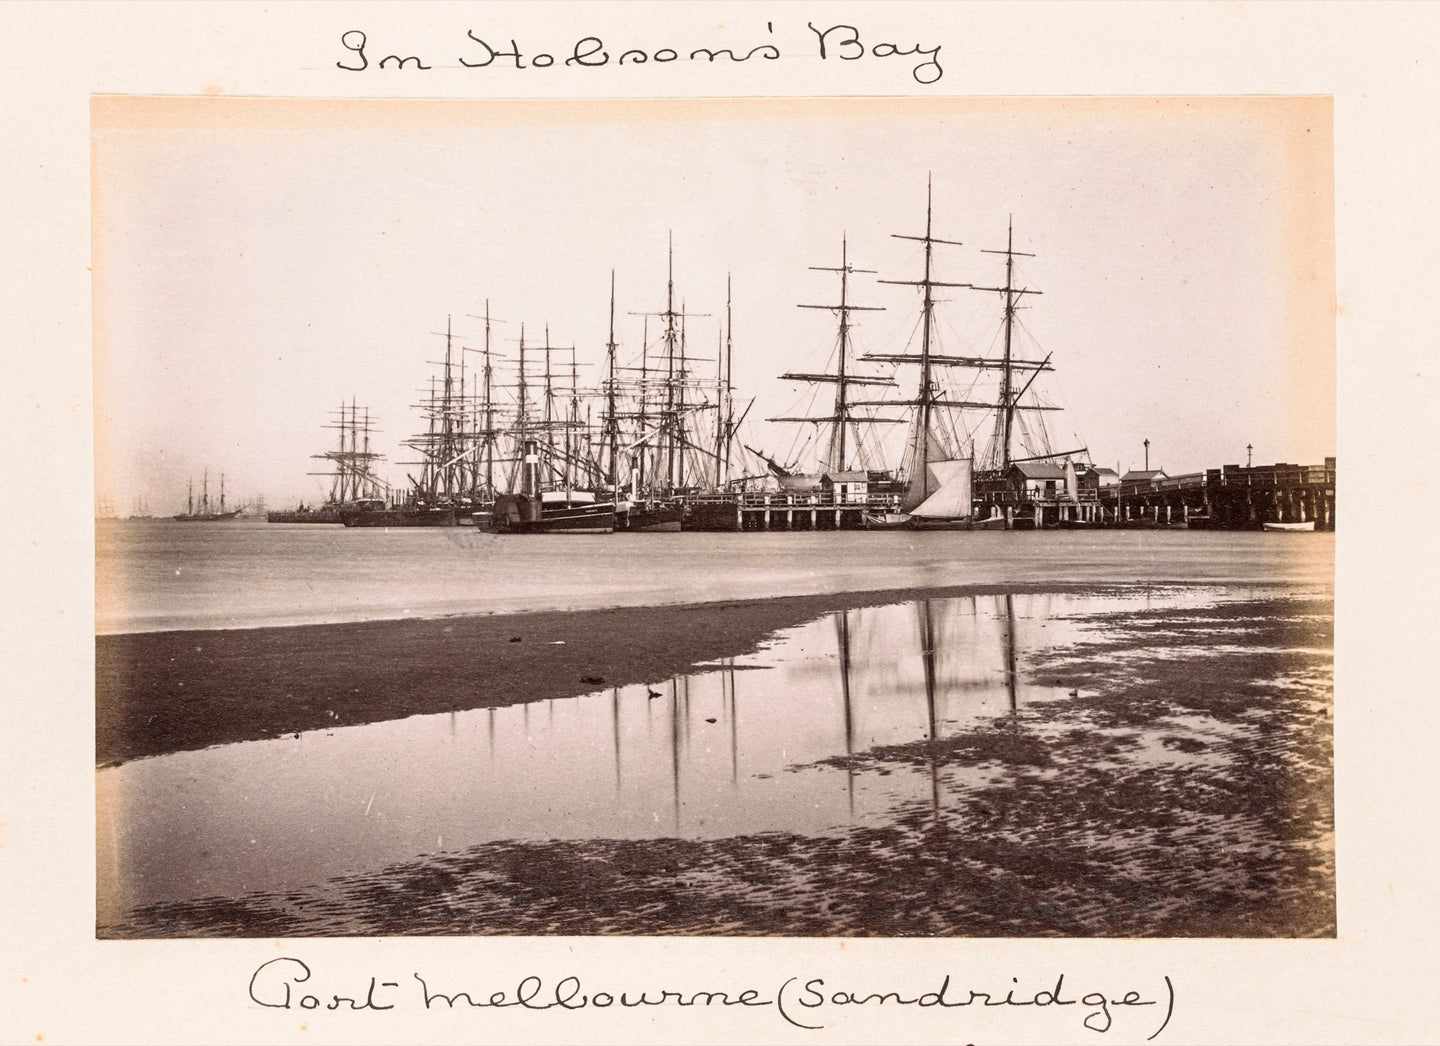 In Hobson's Bay, Port Melbourne (Sandridge)